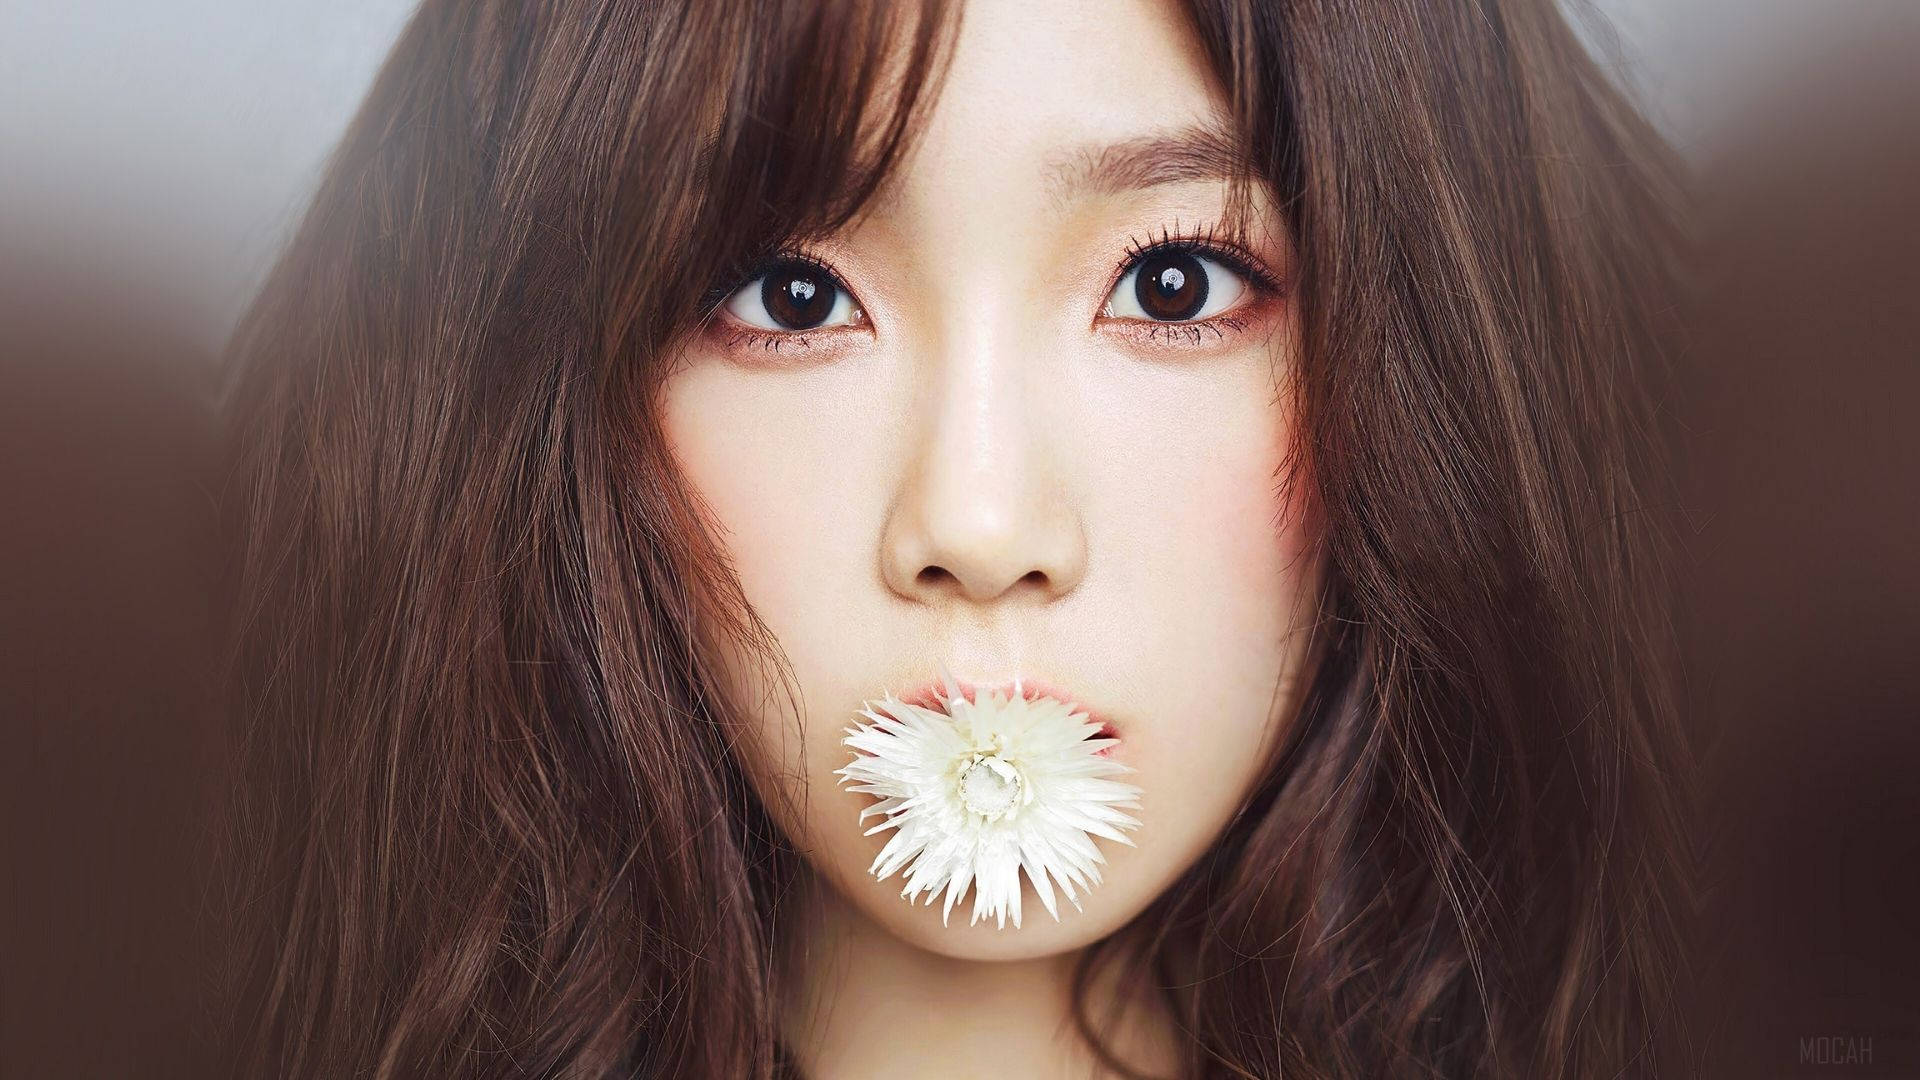 Taeyeonbeißt In Eine Blume. Wallpaper